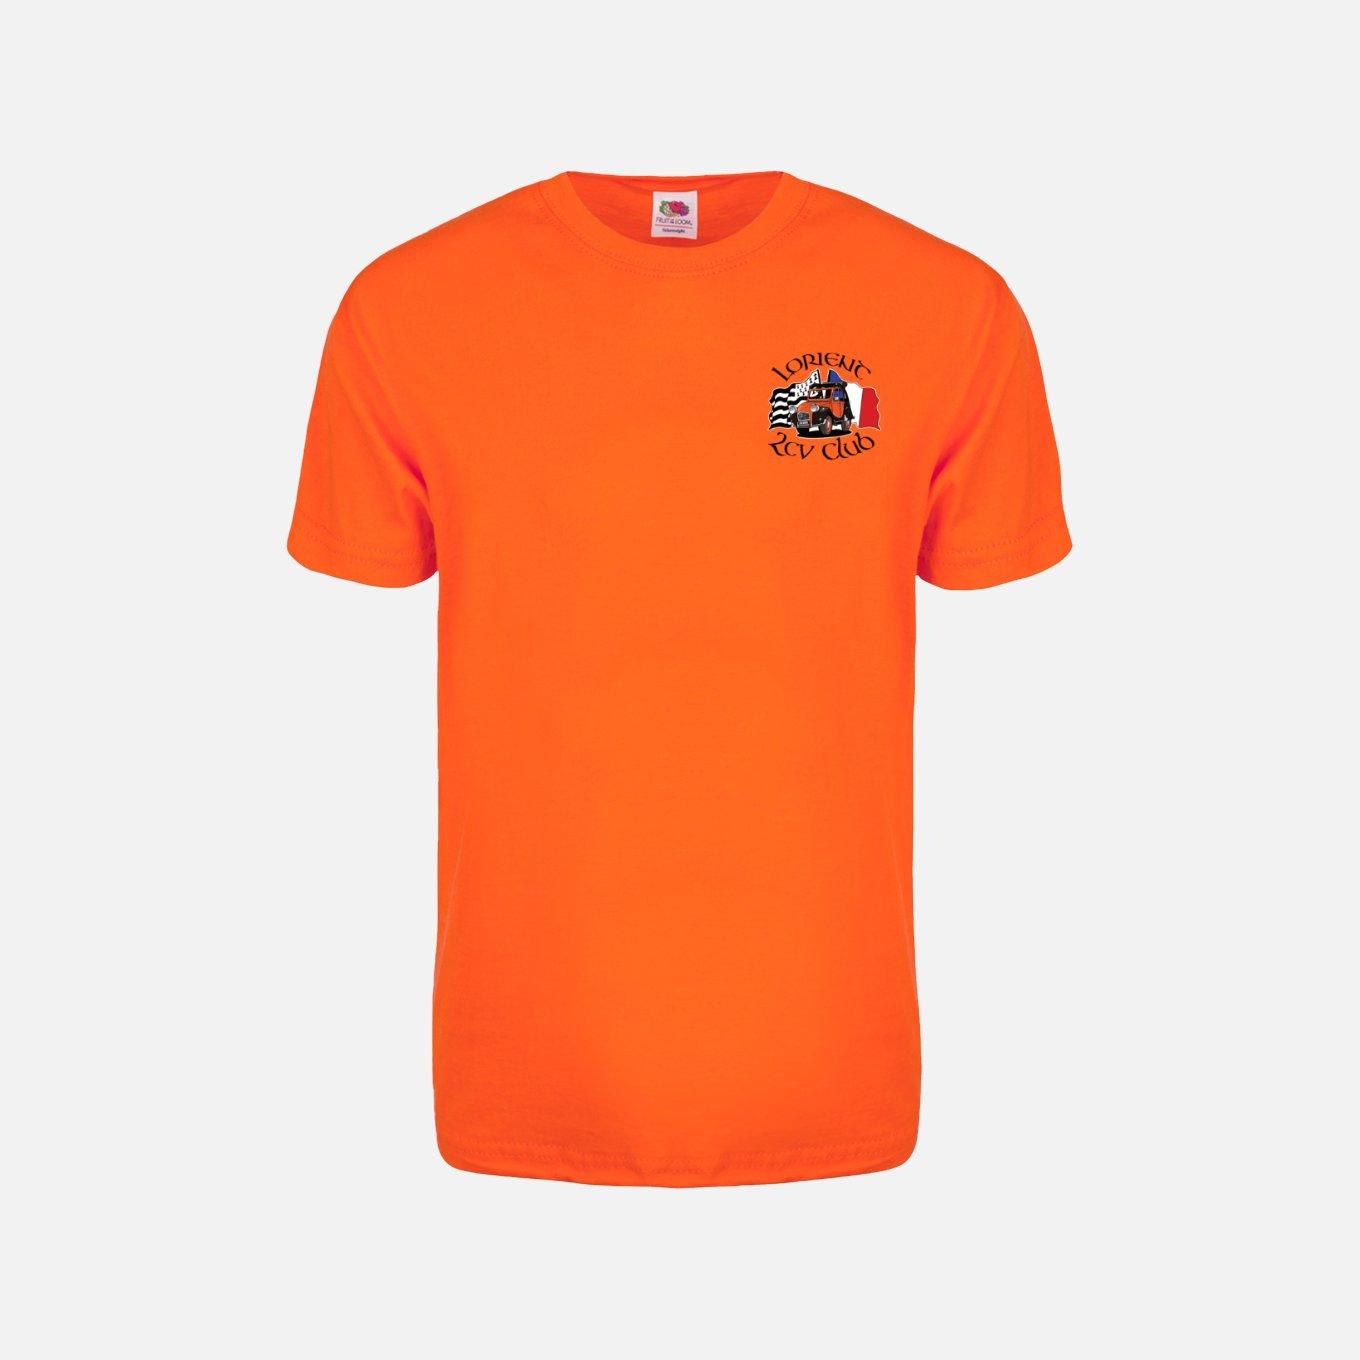 Tshirt orange recto